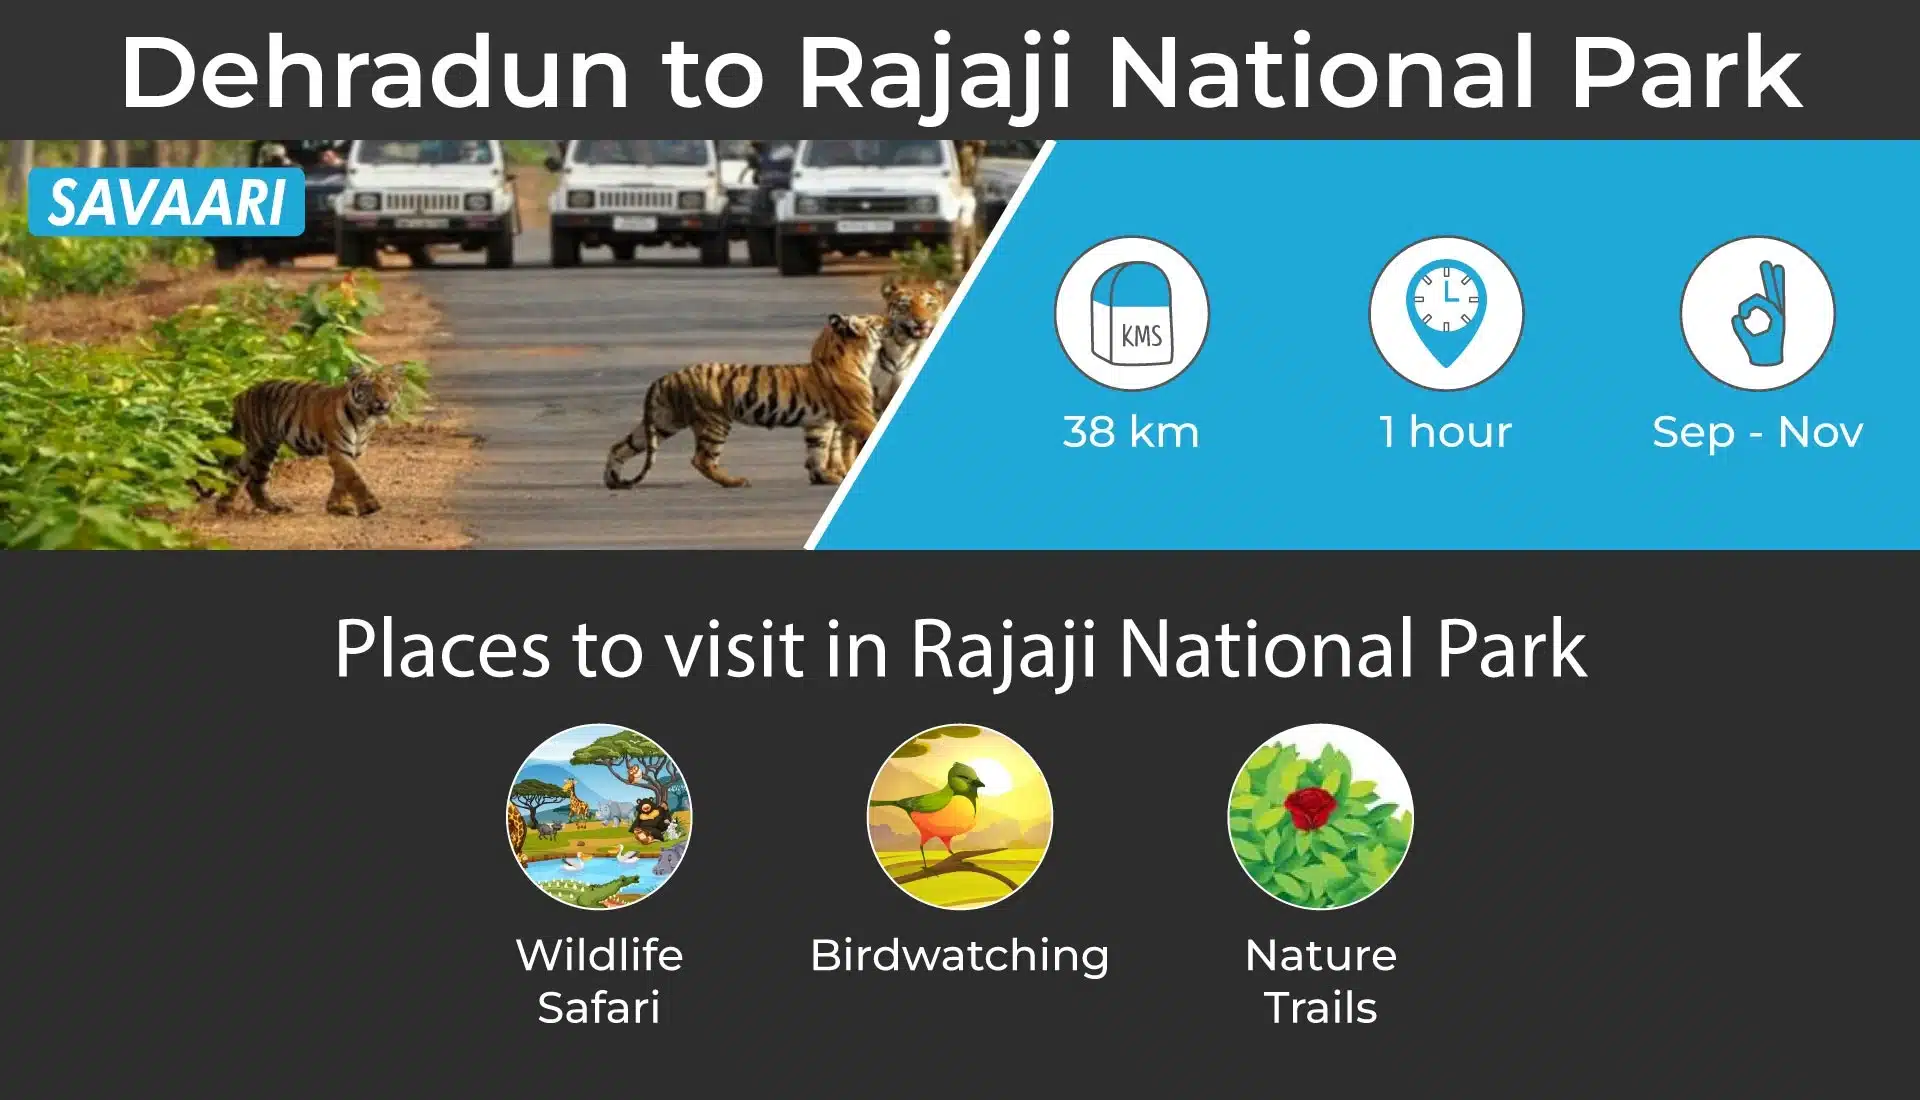 Dehradun to Rajaji National Park